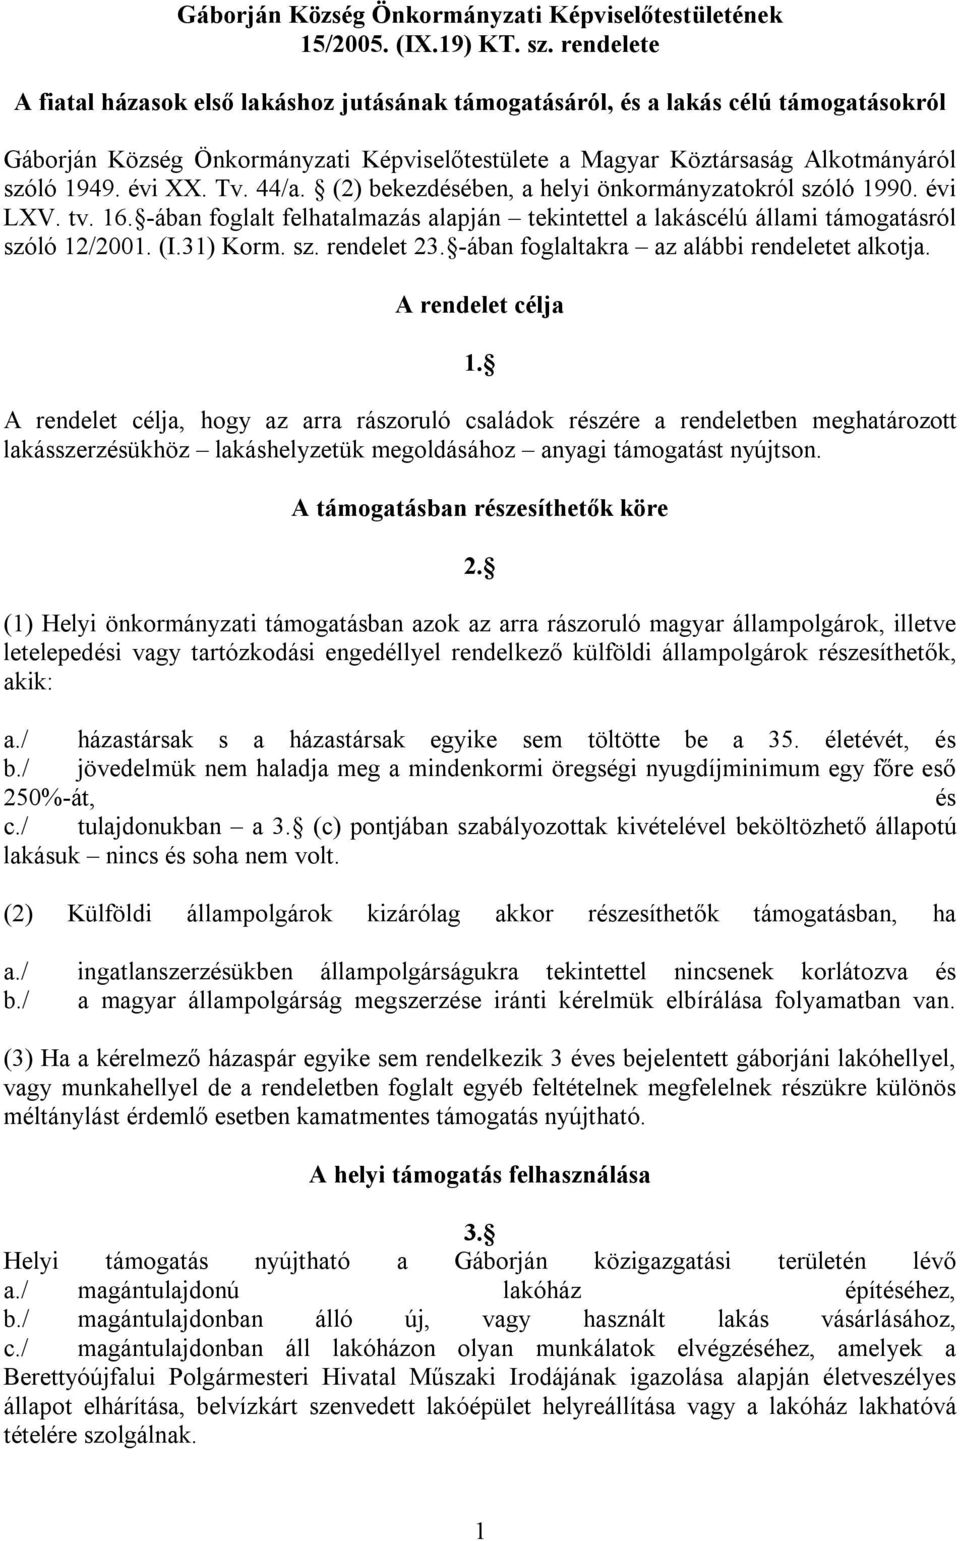 Tv. 44/a. (2) bekezdésében, a helyi önkormányzatokról szóló 1990. évi LXV. tv. 16. -ában foglalt felhatalmazás alapján tekintettel a lakáscélú állami támogatásról szóló 12/2001. (I.31) Korm. sz. rendelet 23.